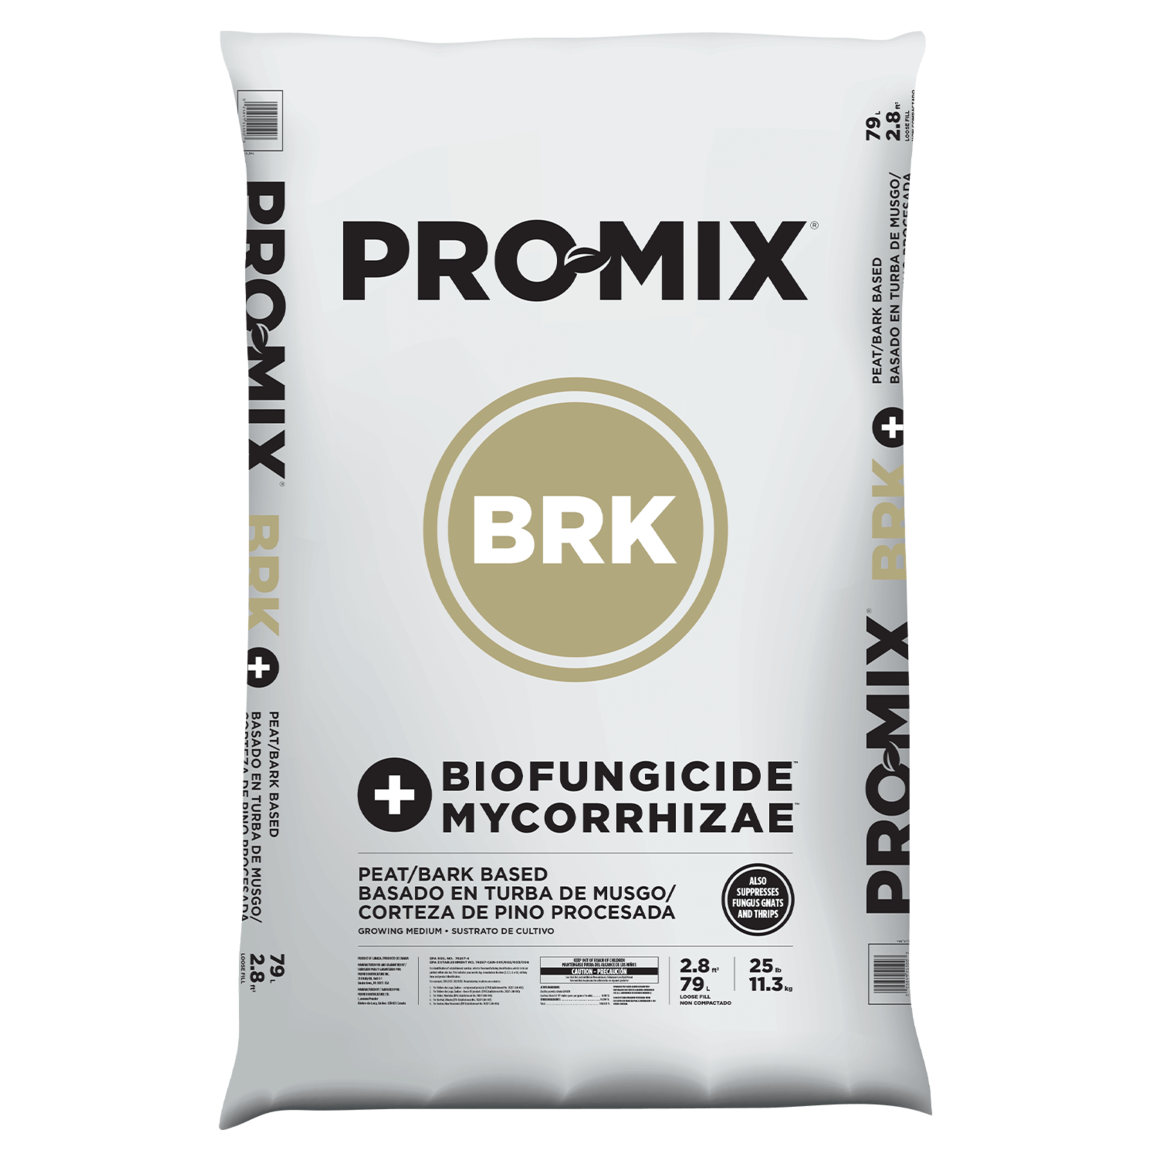 PRO-MIX BRK BIOFUNGICIDE + MYCORRHIZAE 2.8 cu.ft.